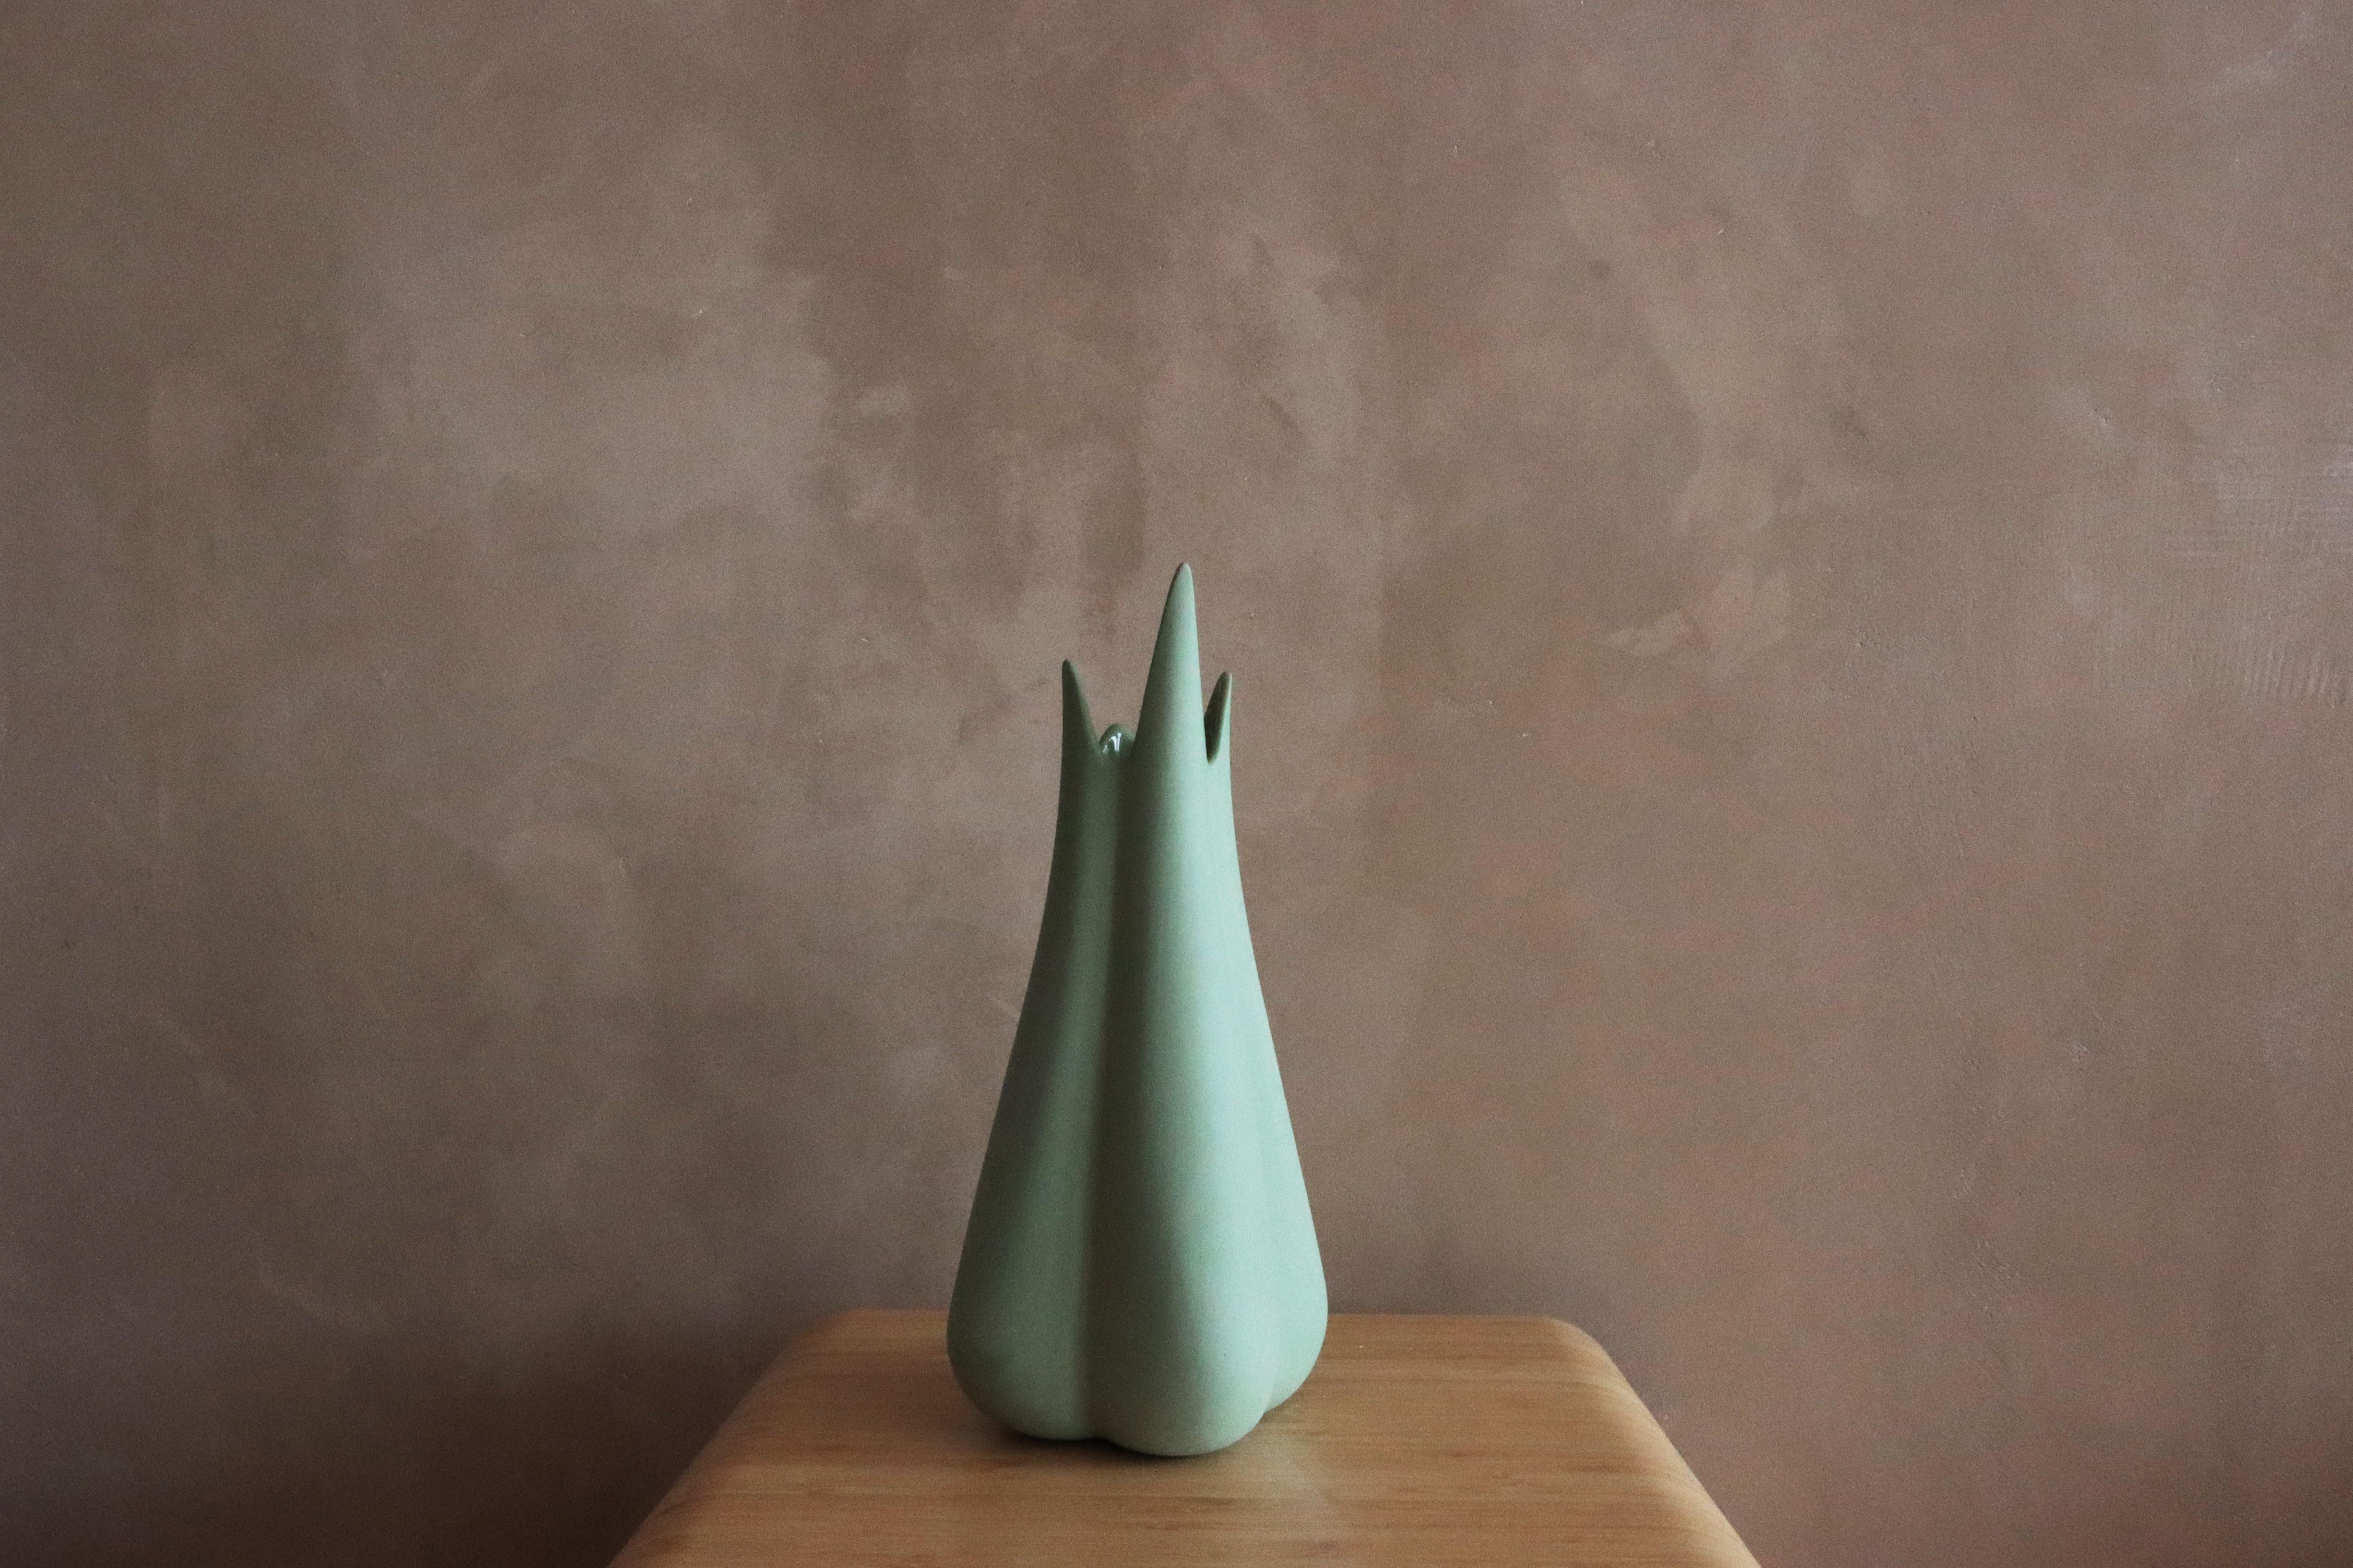 Erhöhen Sie Ihre Dekoration mit der Lilium-Vase! Dieses wunderschön gestaltete Stück ist perfekt für alle, die ihrem Raum einen Hauch von Raffinesse und Eleganz verleihen wollen.

Diese Vase ist aus hochwertiger Porzellankeramik gefertigt, langlebig